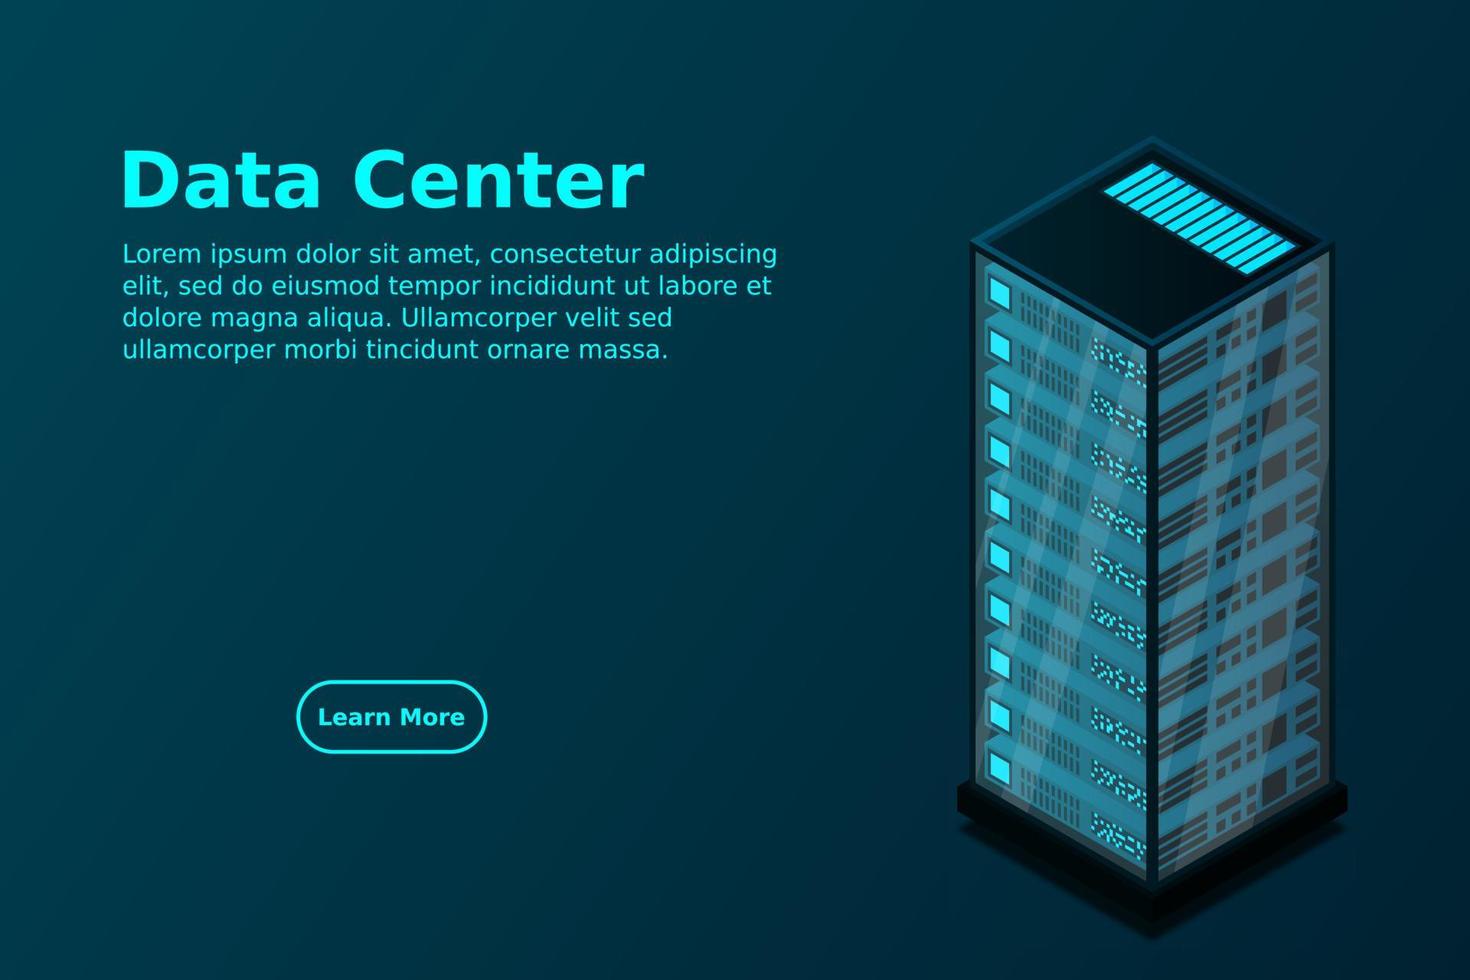 Mainframe, powered server, high technology concept, data center, cloud data storage vector